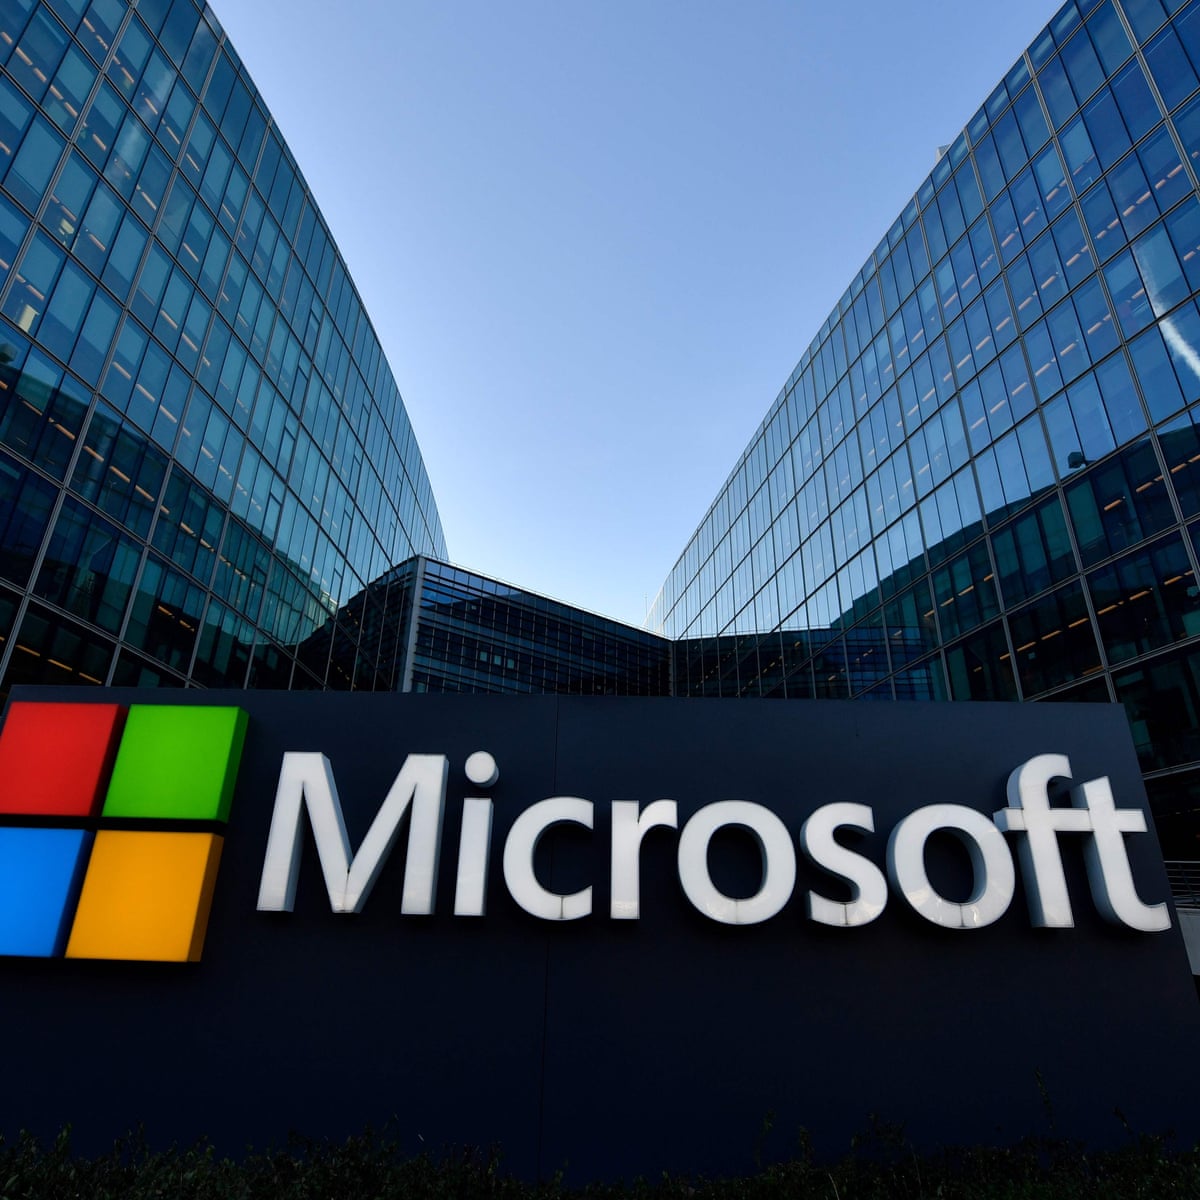 Μέσα στο 2021 έρχεται νέα έκδοση της Microsoft Office